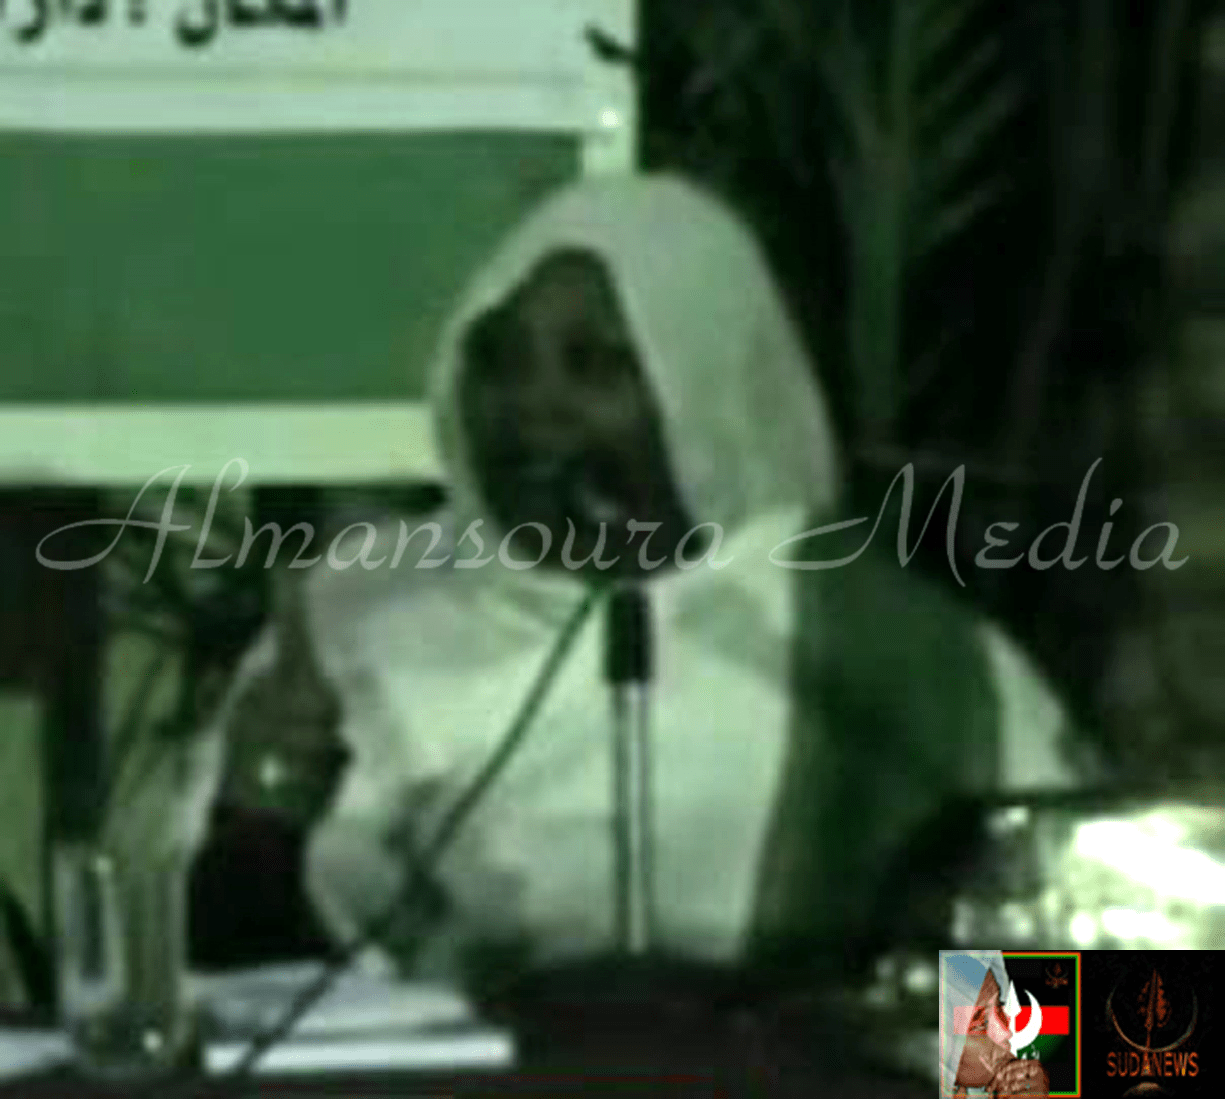 الحبيبة الدكتورة مريم الصادق المهدي نائبة رئيس حزب الأمة القومي